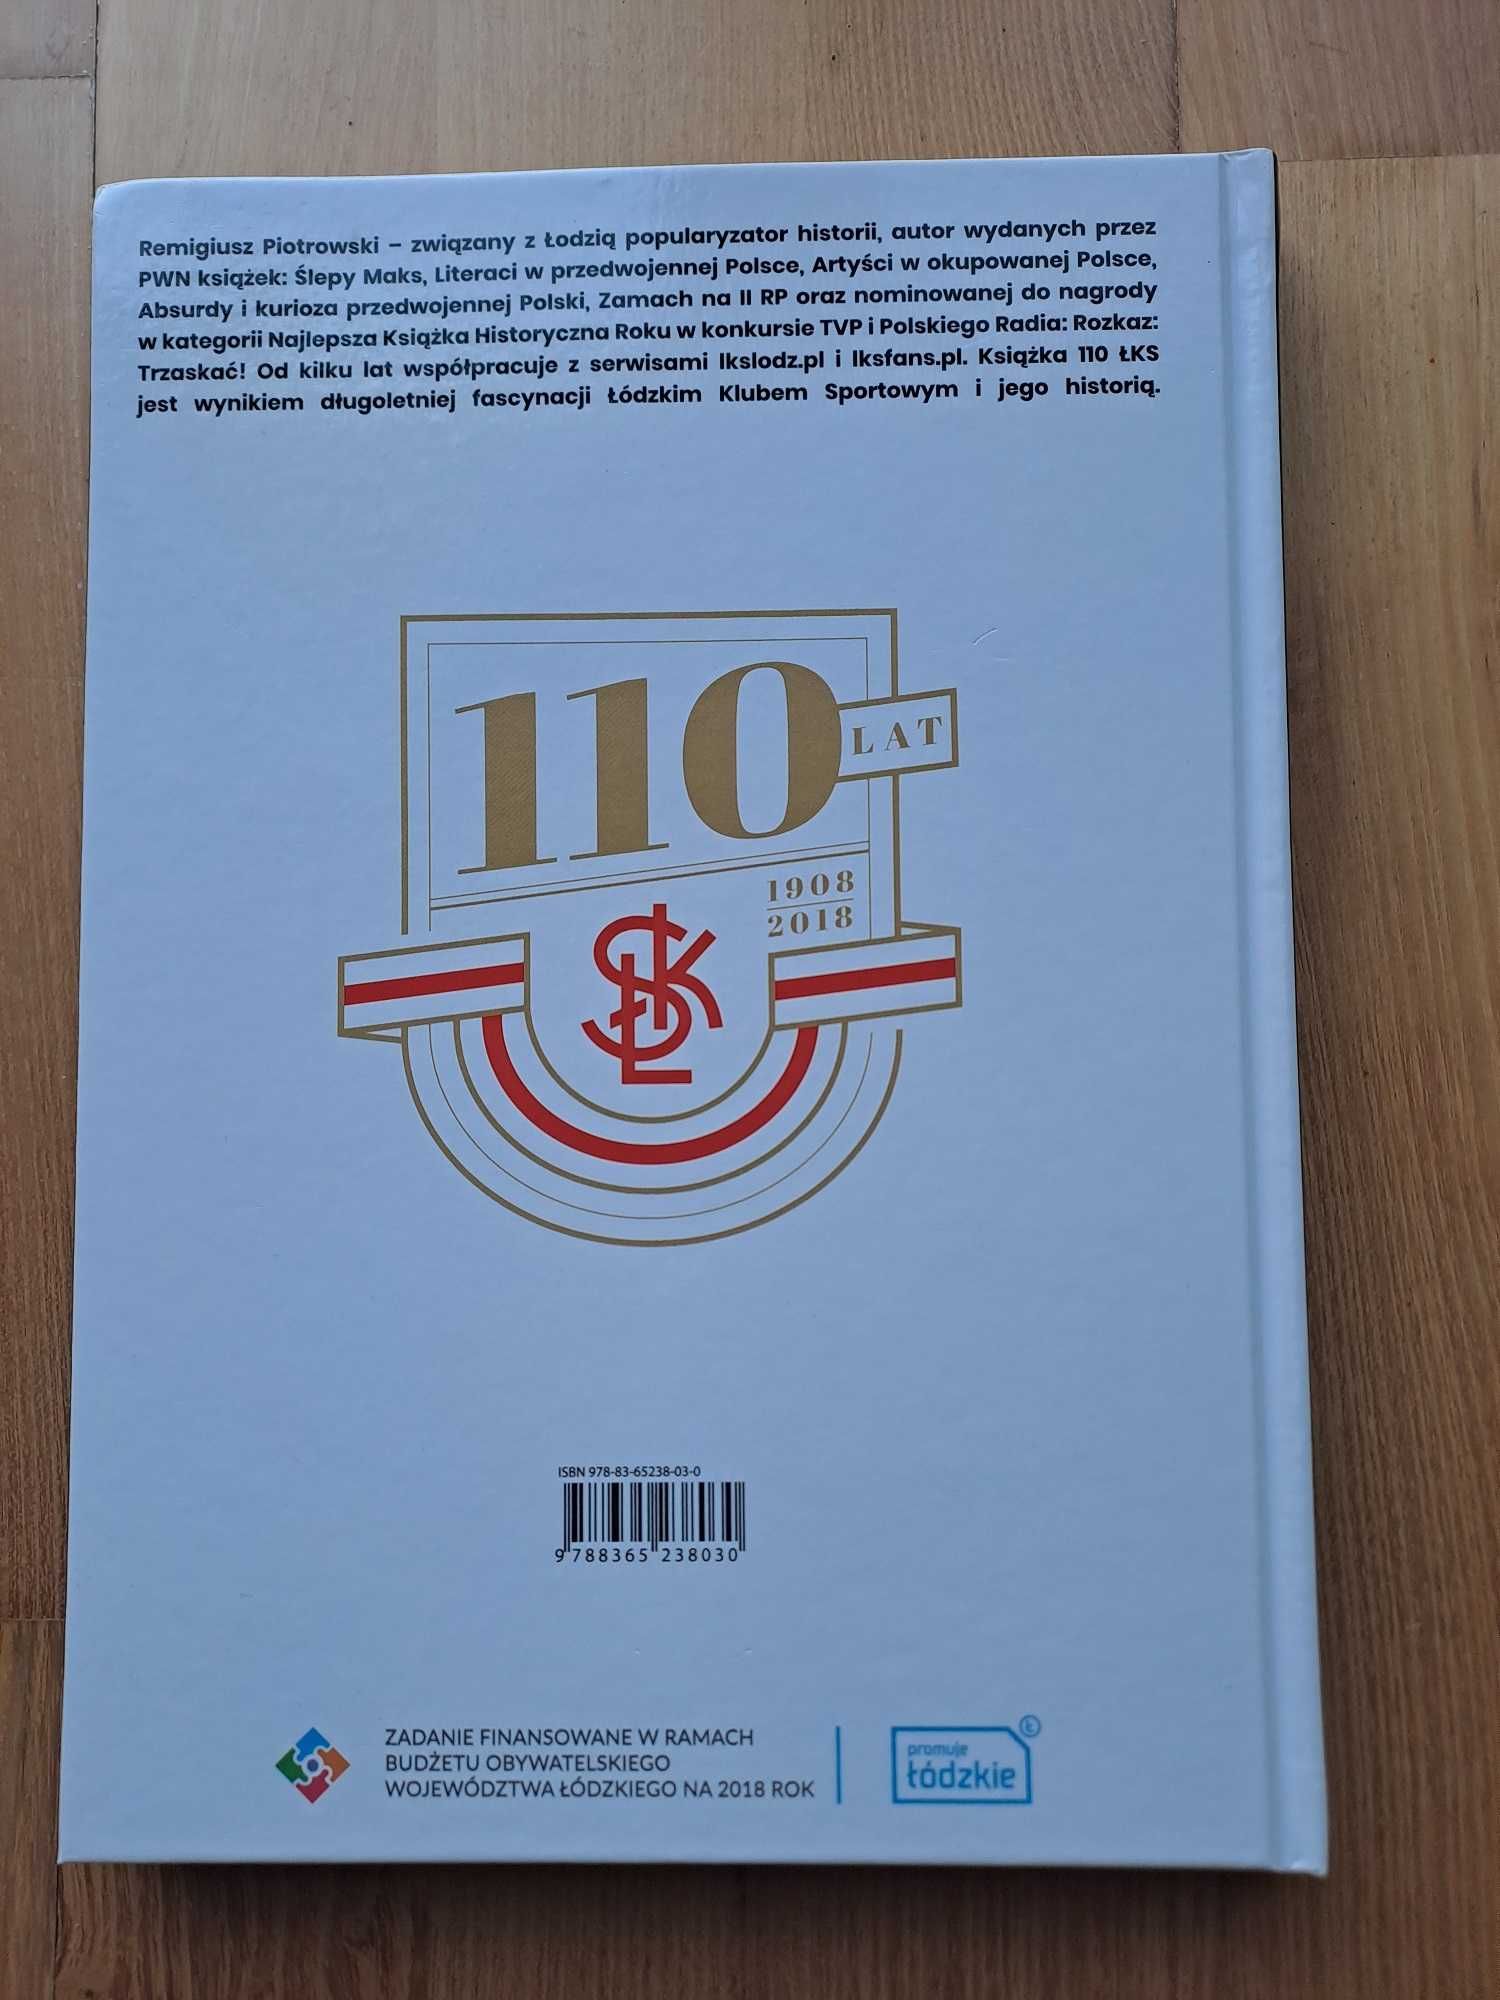 110 lat - 110 meczów na 110-lecie Łódzkiego Klubu Sportowego